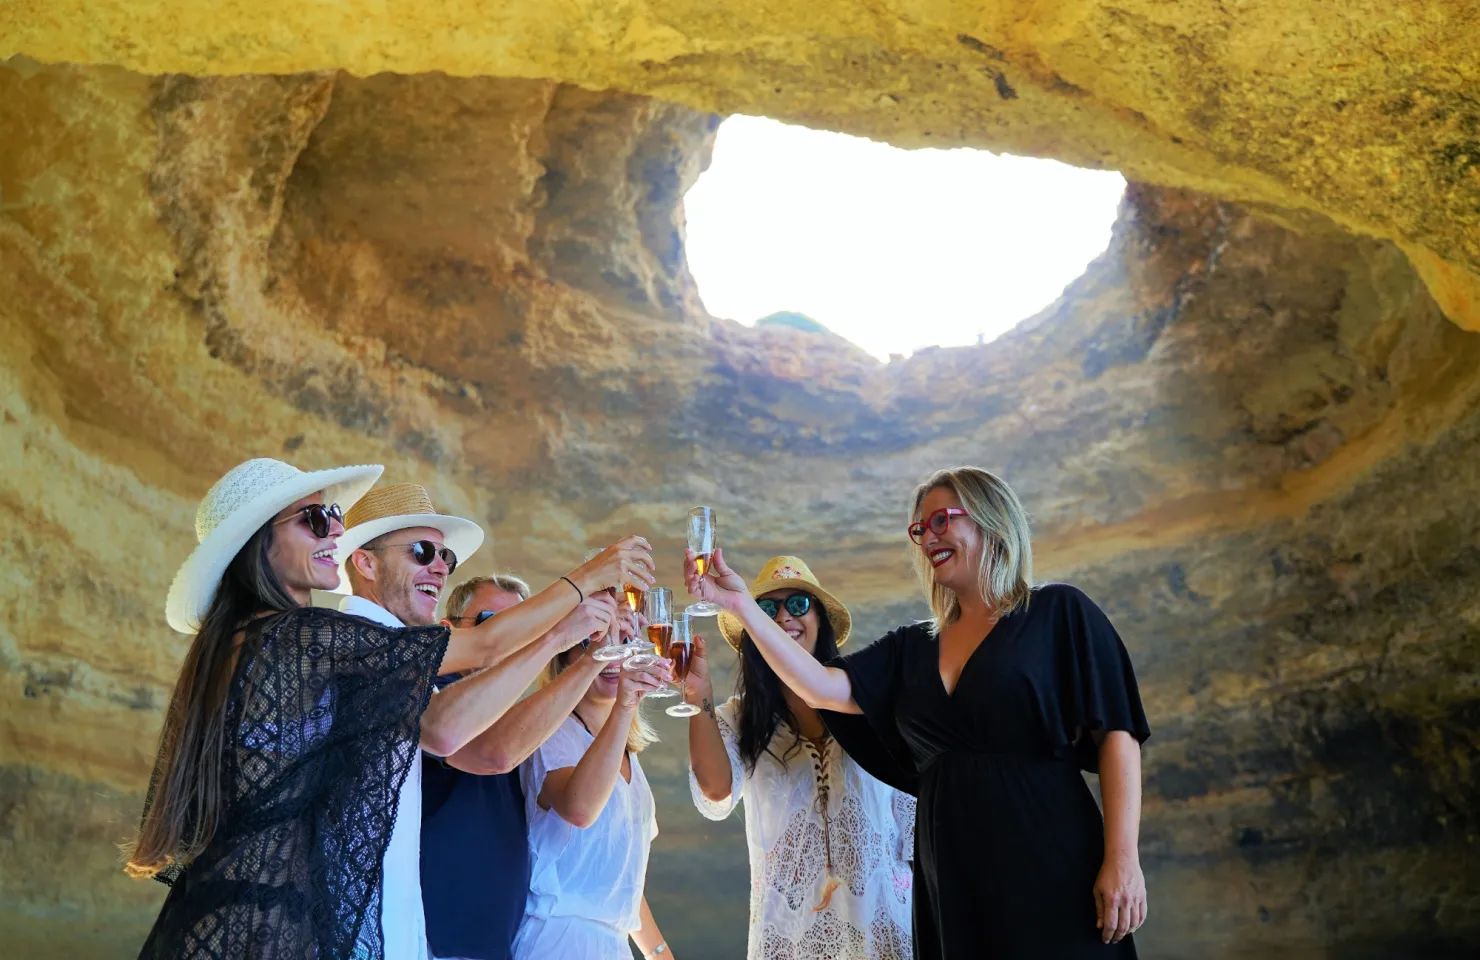 Visit Benagil Cave in the Algarve